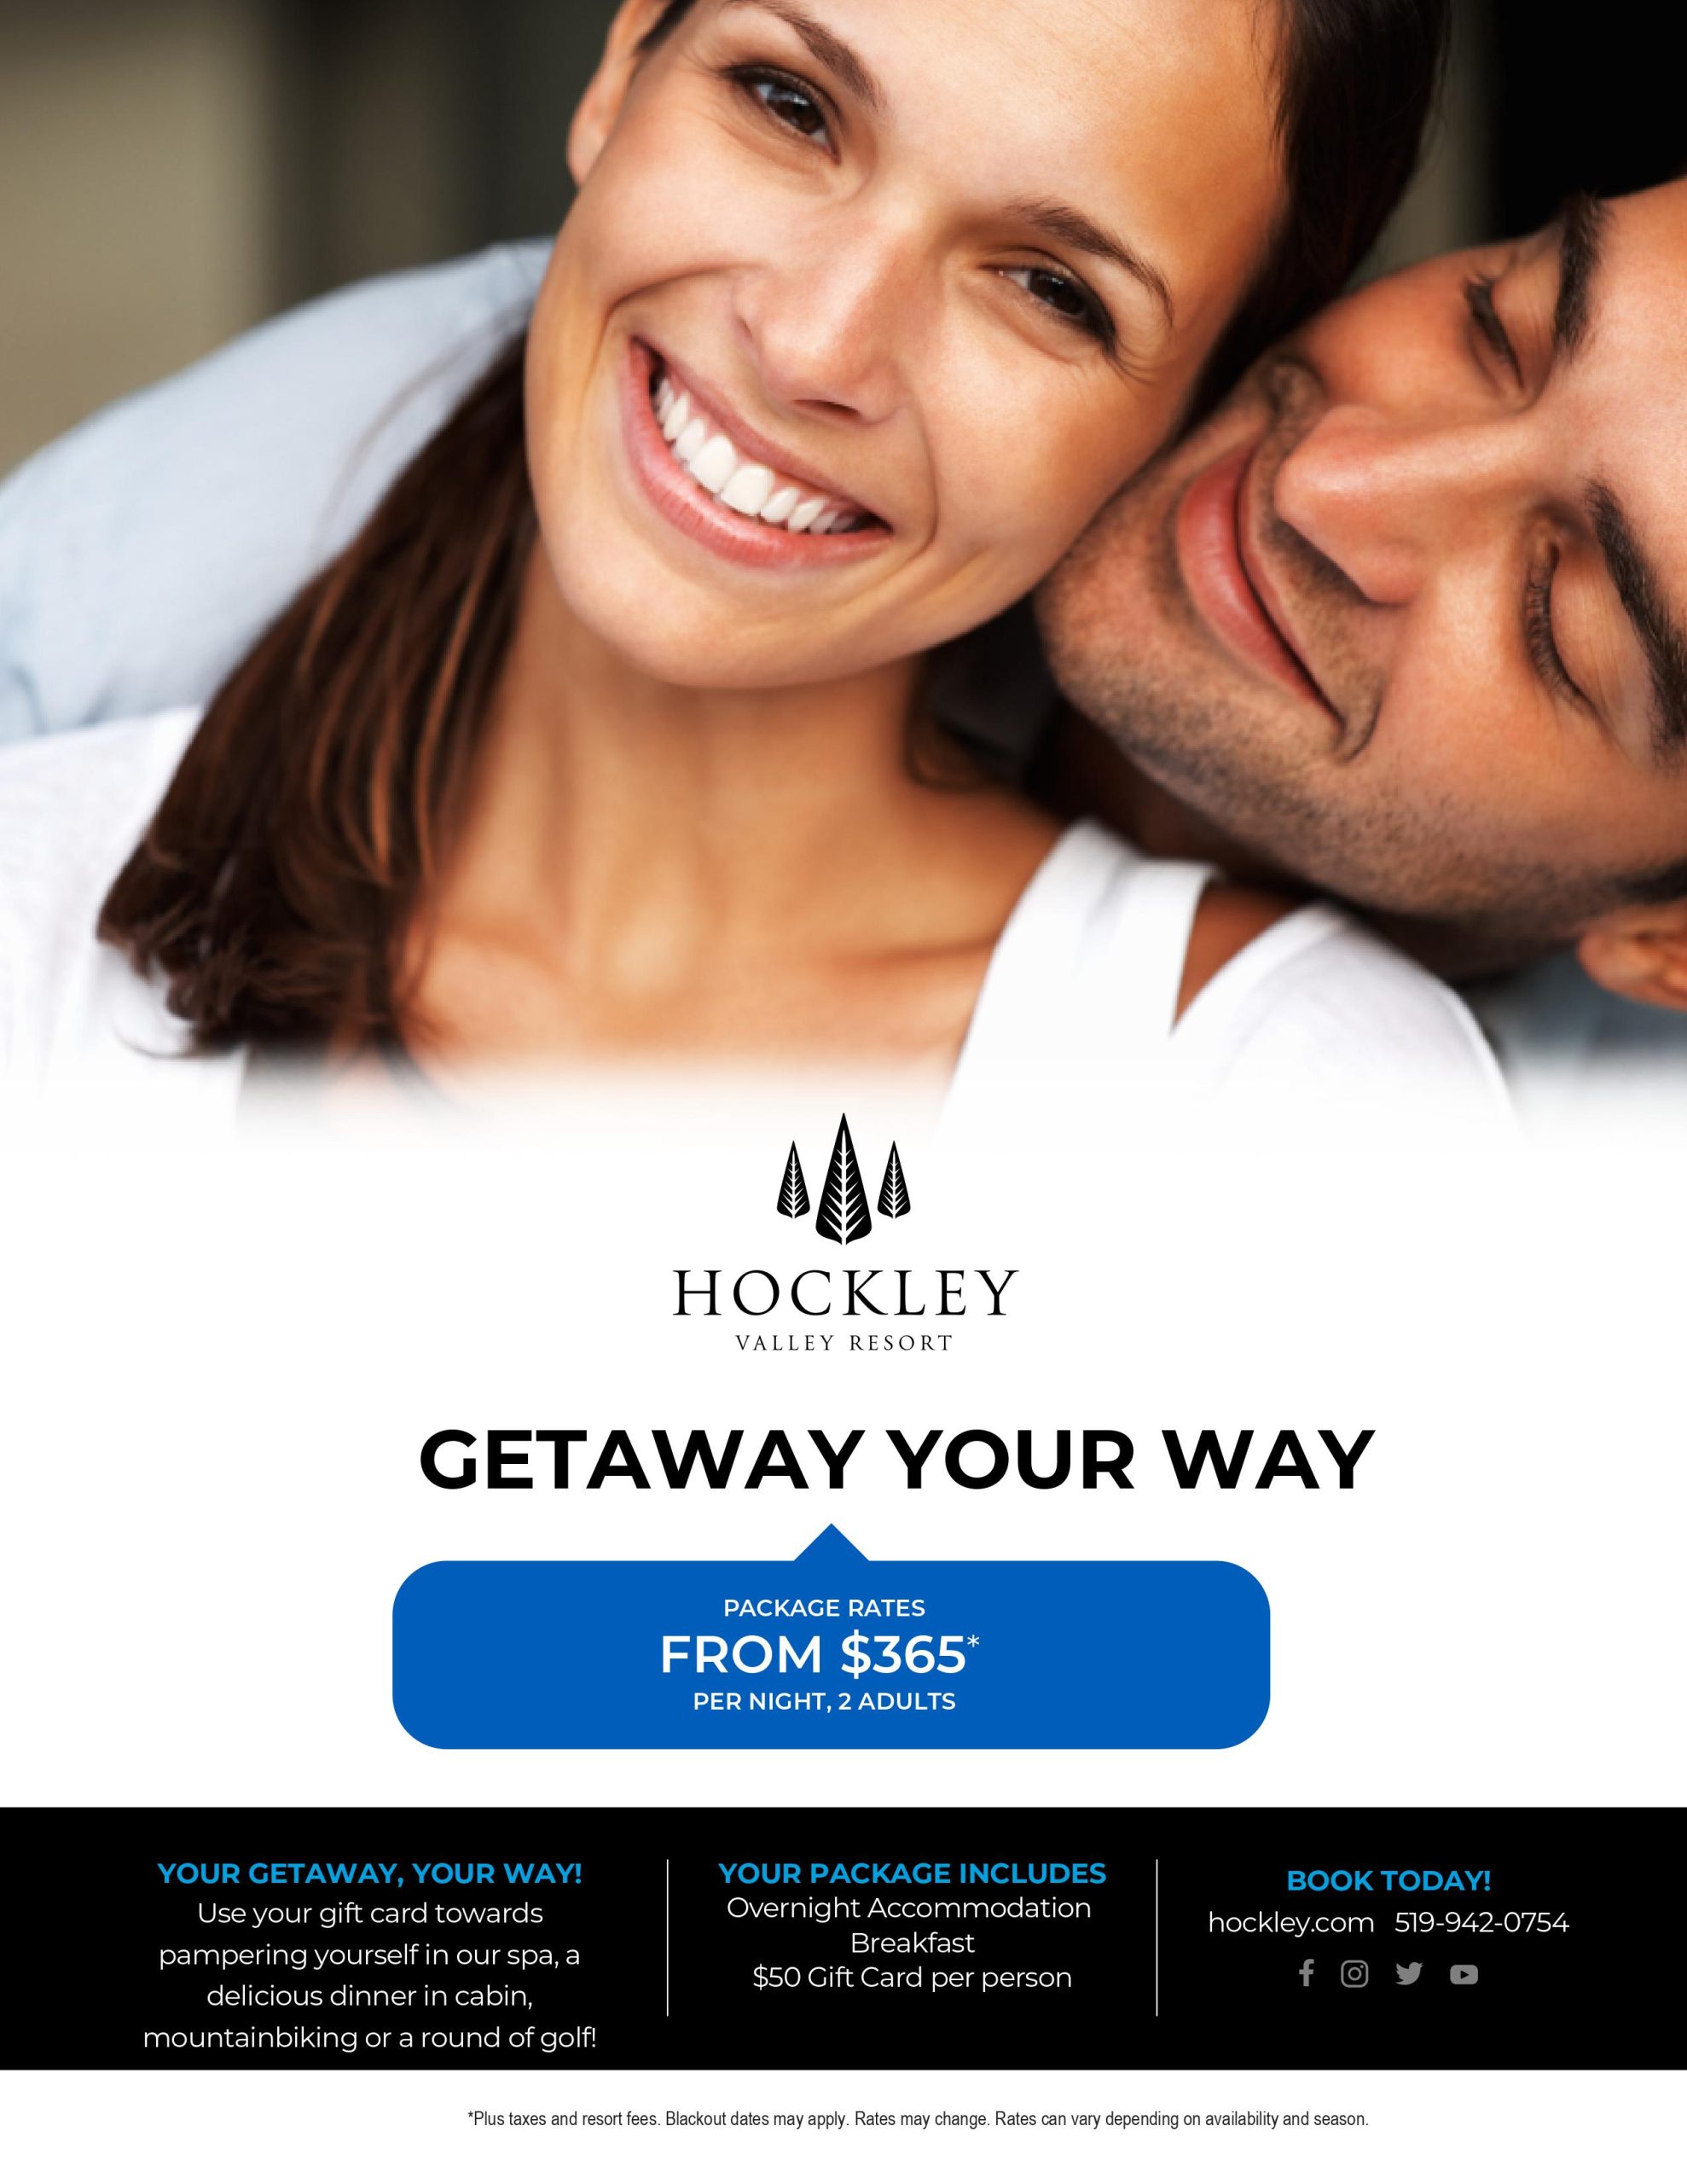 Getaway Your Way - Hockley